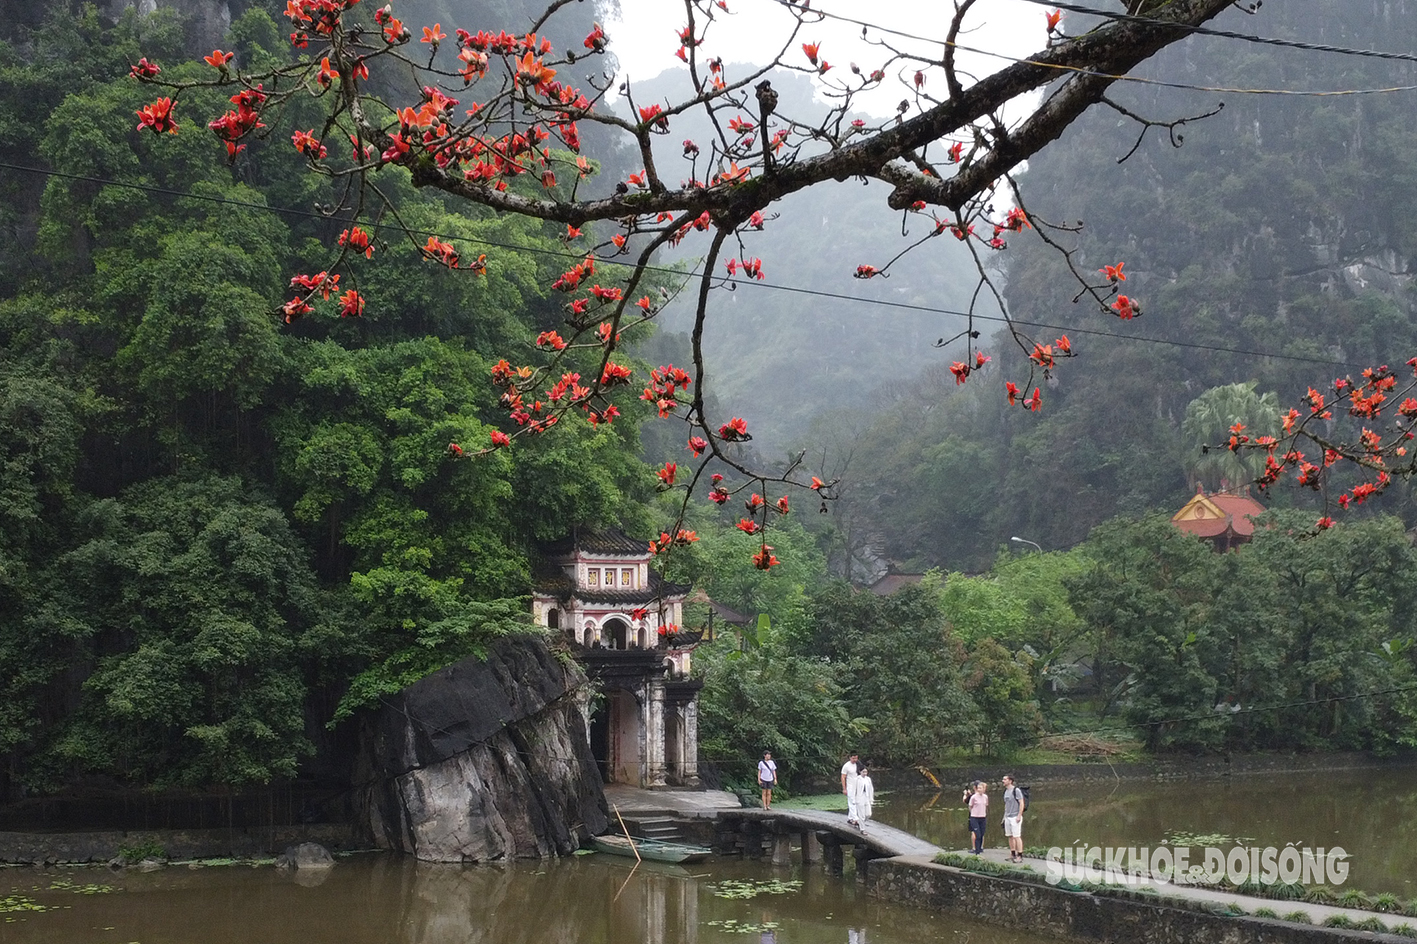 Mê mẩn sắc đỏ của cây gạo trăm tuổi bên mái chùa rêu phong ở Ninh Bình- Ảnh 4.